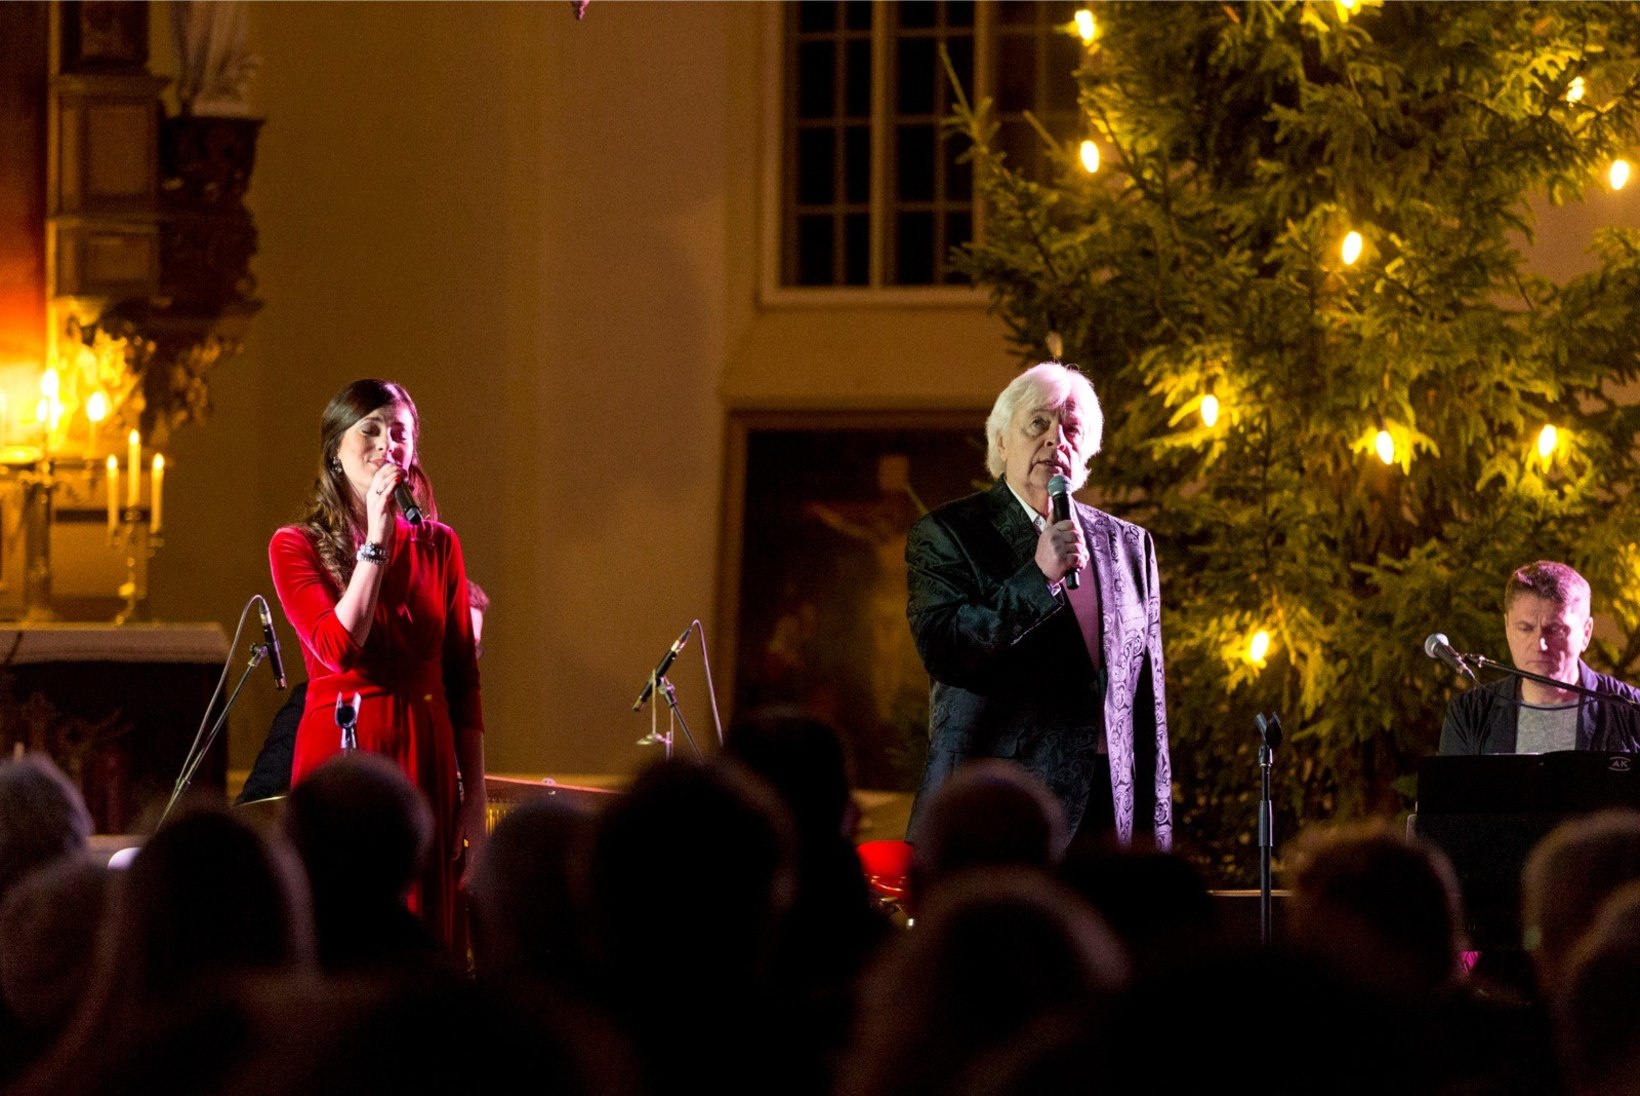 ÕHTULEHE FOTOD | Birgit ja Ivo Linna andsid Hageri kirikus sooja jõulukontserdi